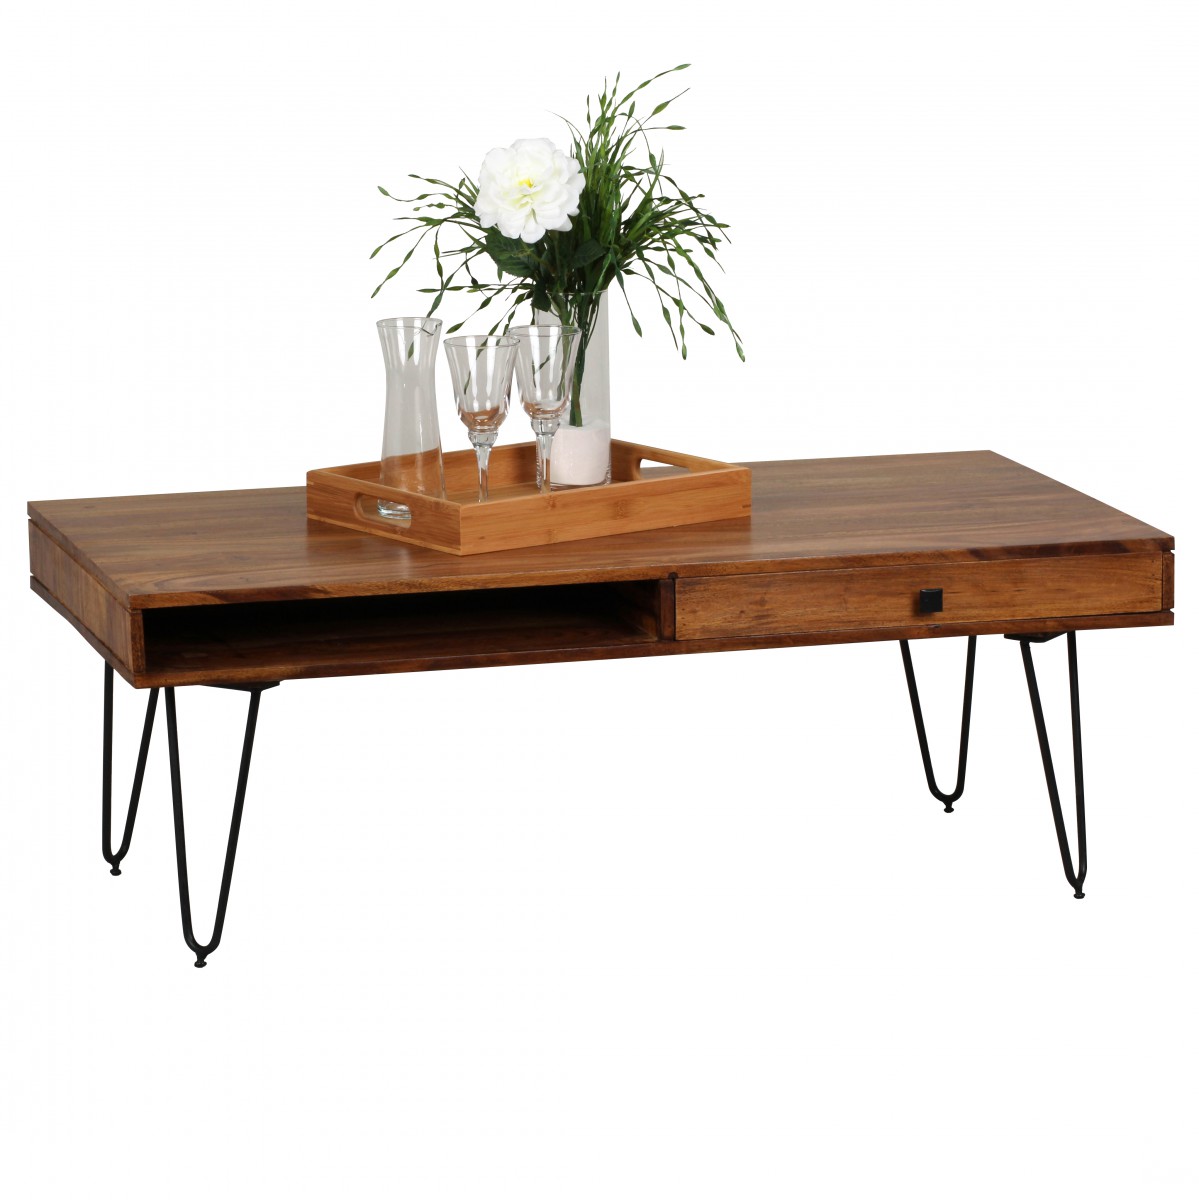 WOHNLING Couchtisch Massiv-Holz Sheesham 120cm breit Wohnzimmer-Tisch Design Metallbeine Landhaus-Stil Beistelltisch